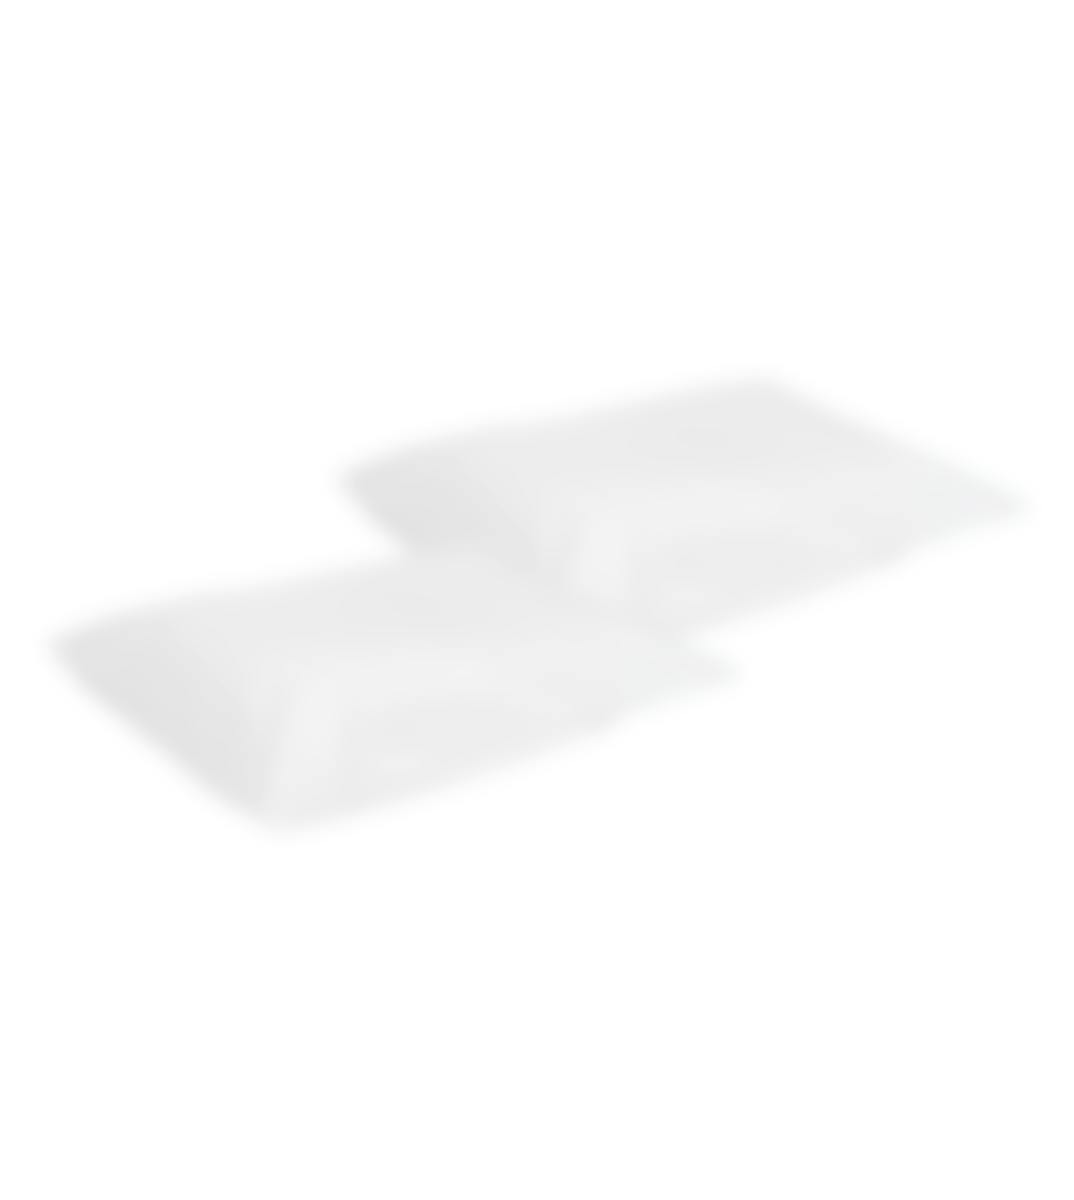 Sleepnight kussensloop voor waterkussen wit flanel set van 2 55 x 75 cm